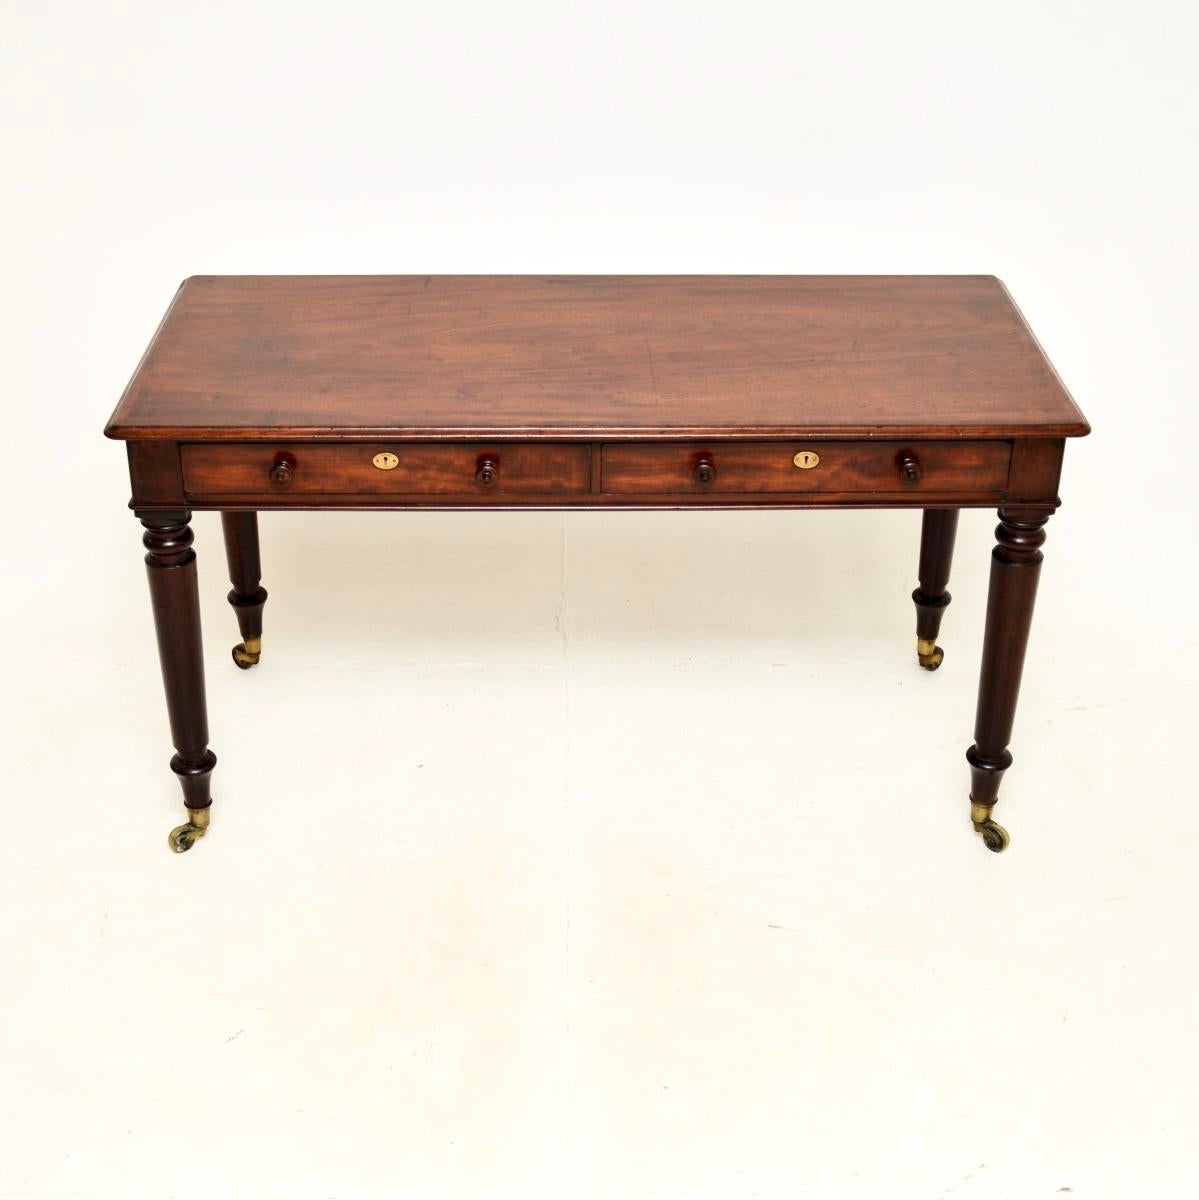 Eine fantastische antike georgianische Schreibtisch / Schreibtisch der höchsten Ordnung. Sie wurde in England hergestellt und stammt aus den 1820er Jahren.

Er ist von hervorragender Qualität, die Platte hat quer verlaufende Kanten, er steht auf